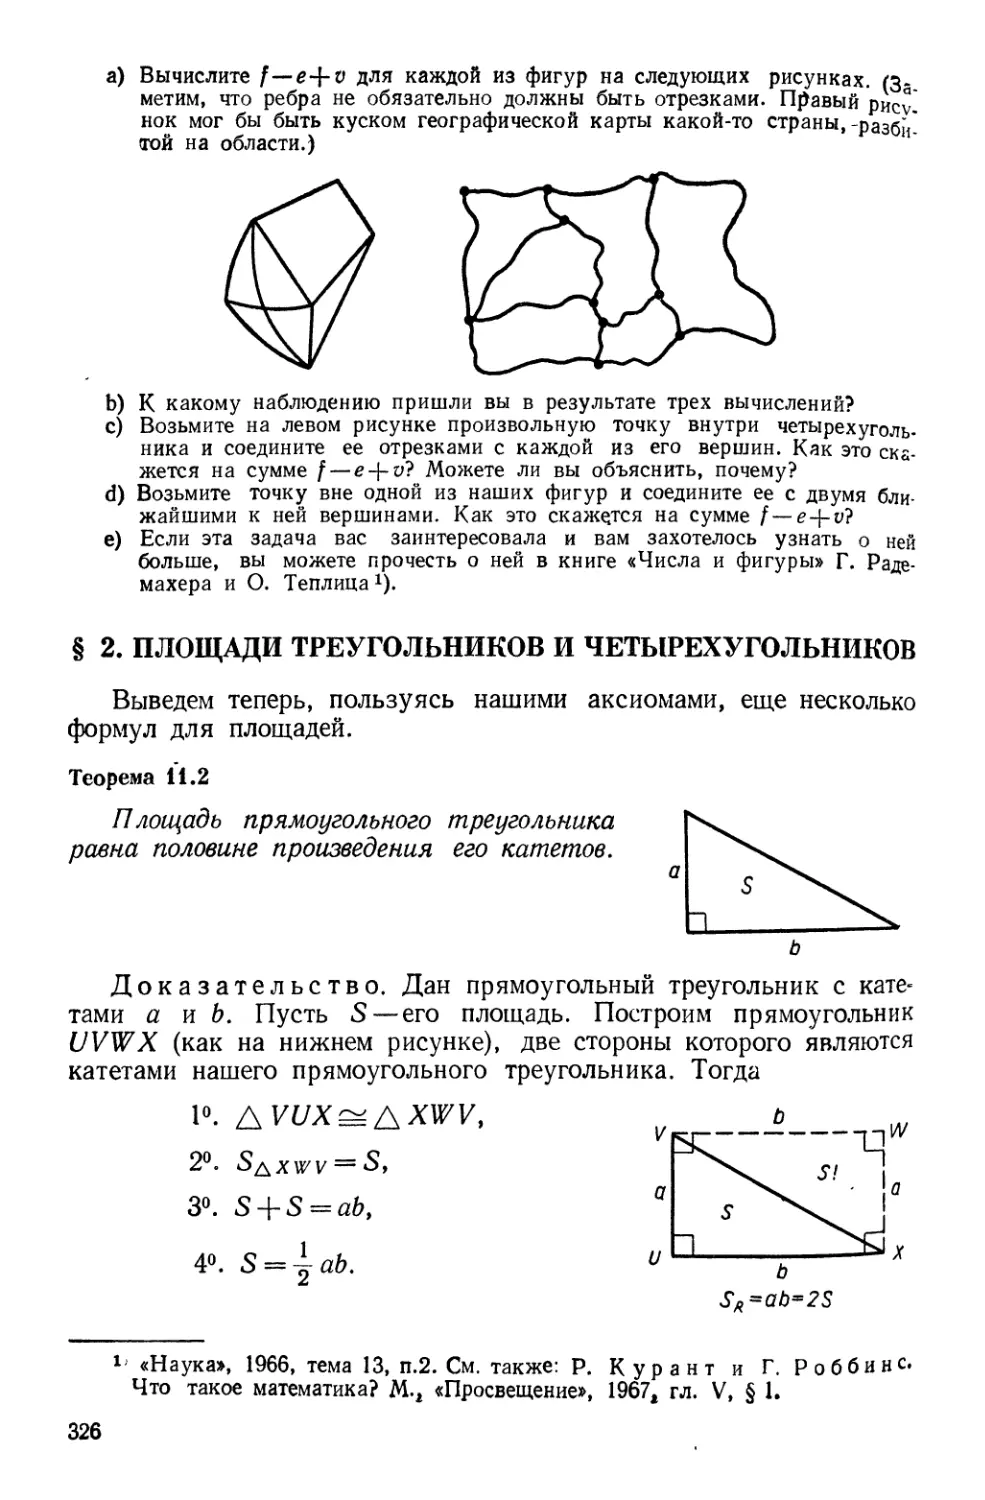 § 2. Площади треугольников и четырехугольников